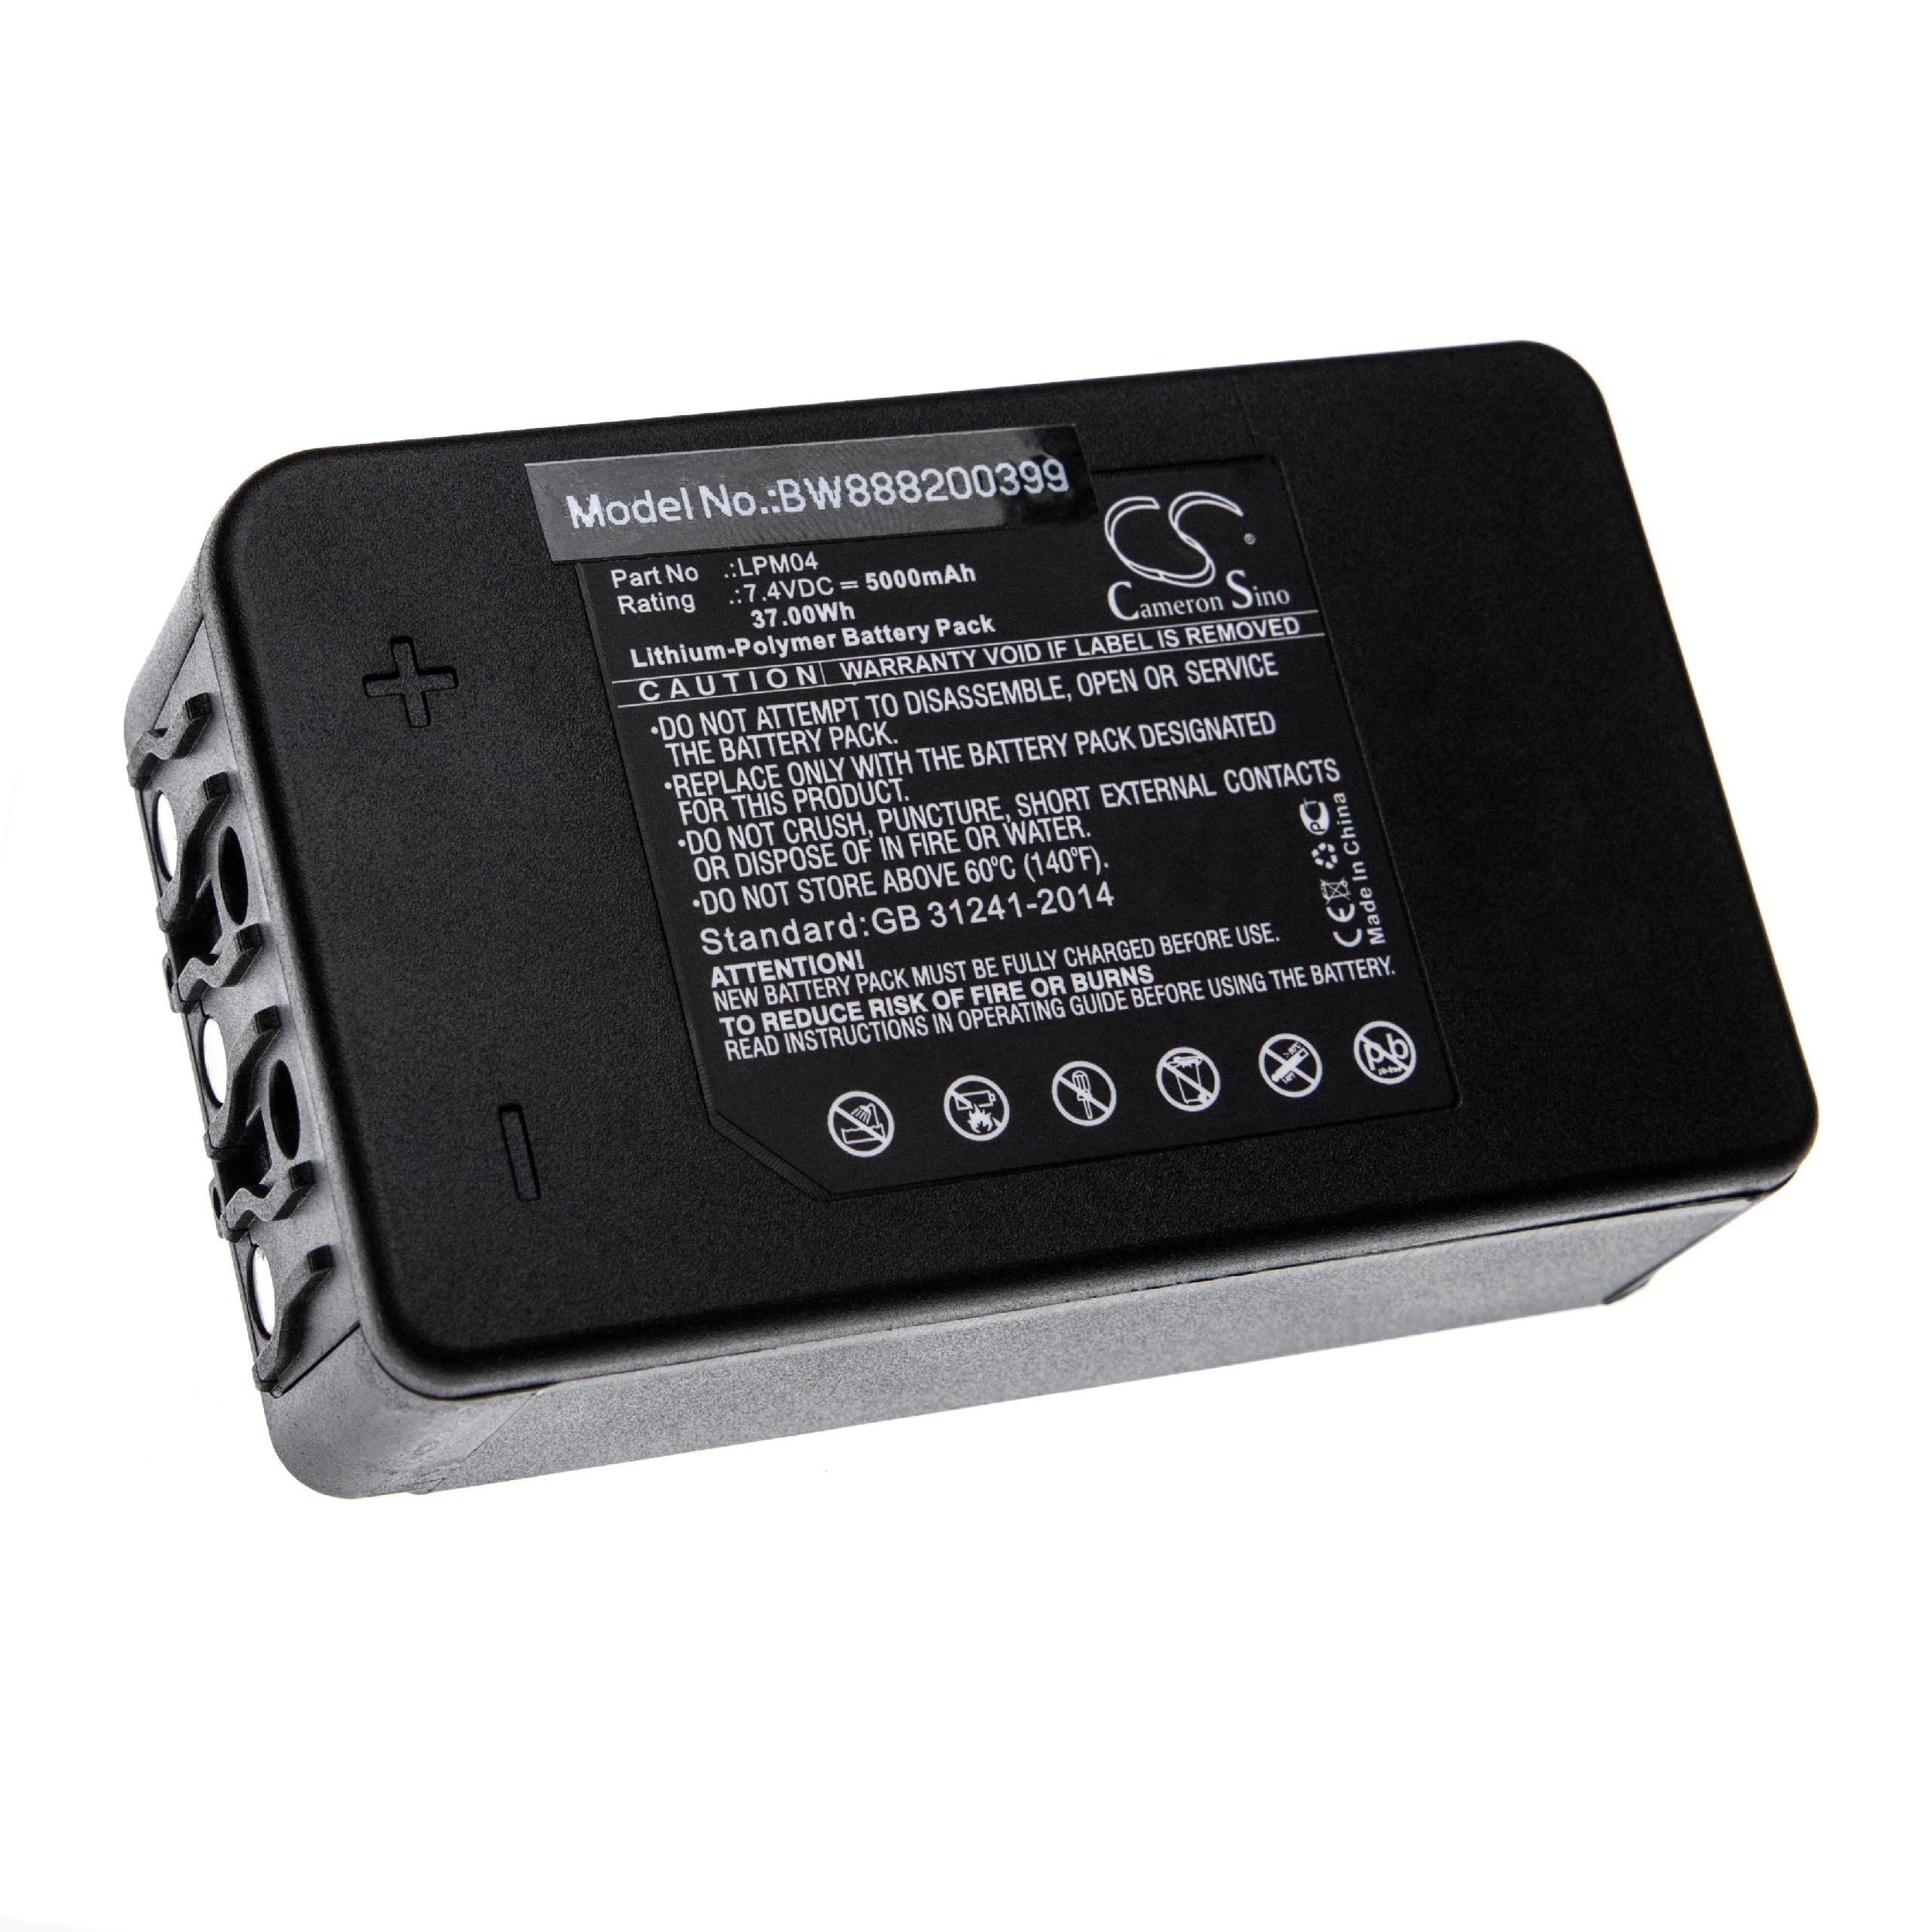 Batterie remplace Autec R0BATT00E12A0, LPM04 pour télécomande industrielle - 5000mAh 7,4V Li-polymère